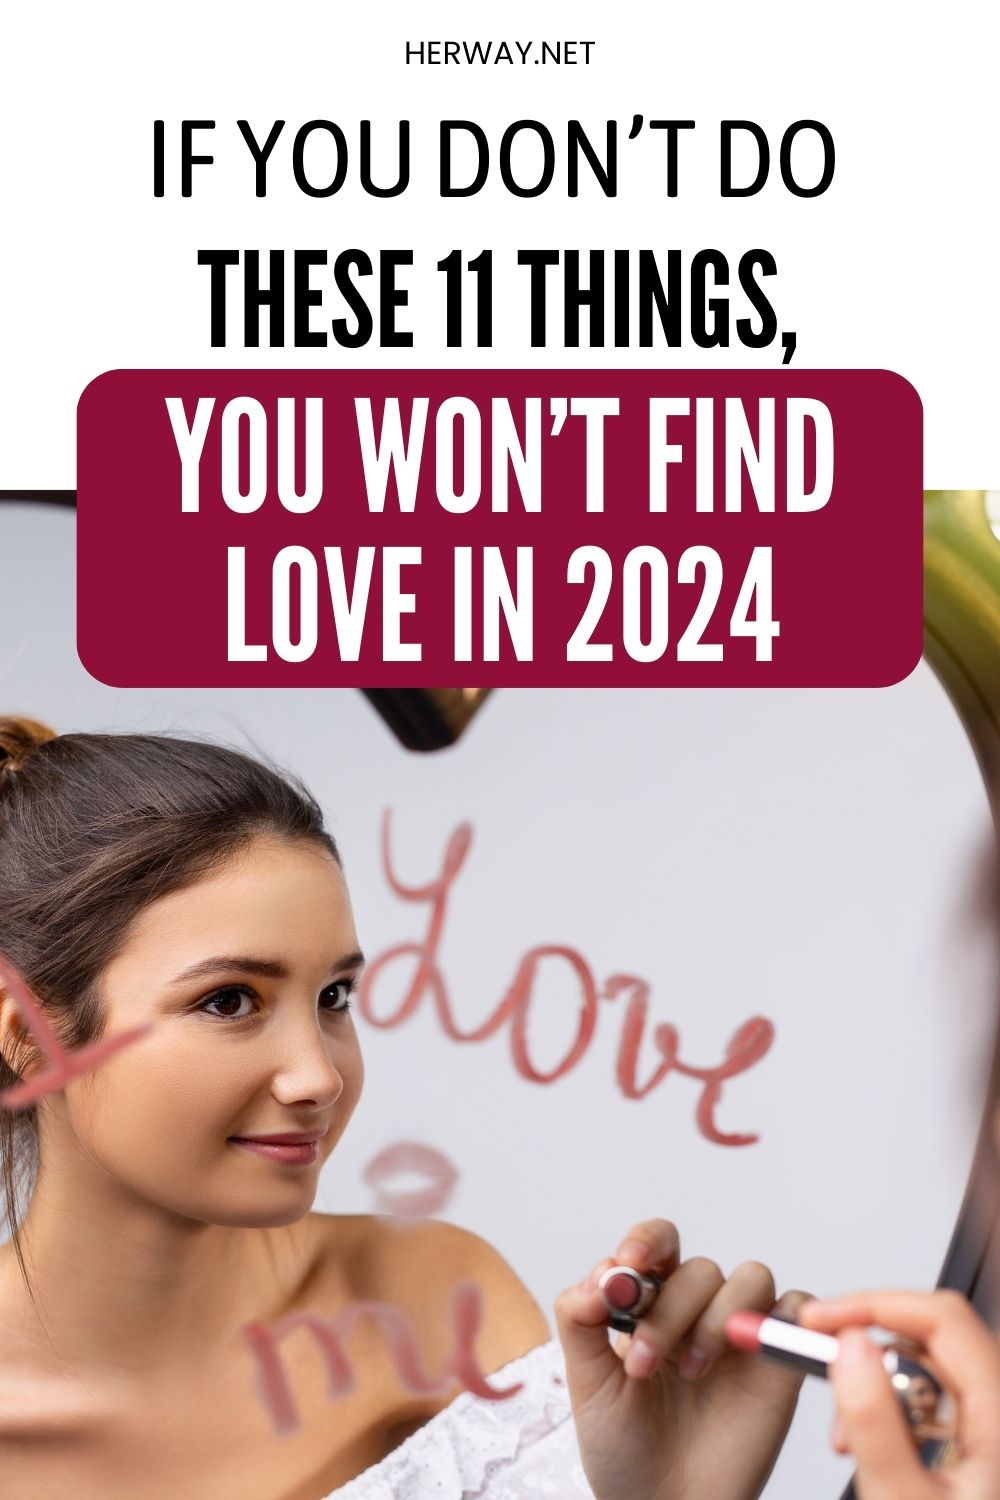 Se não fizeres estas 11 coisas, não vais encontrar o amor em 2024 